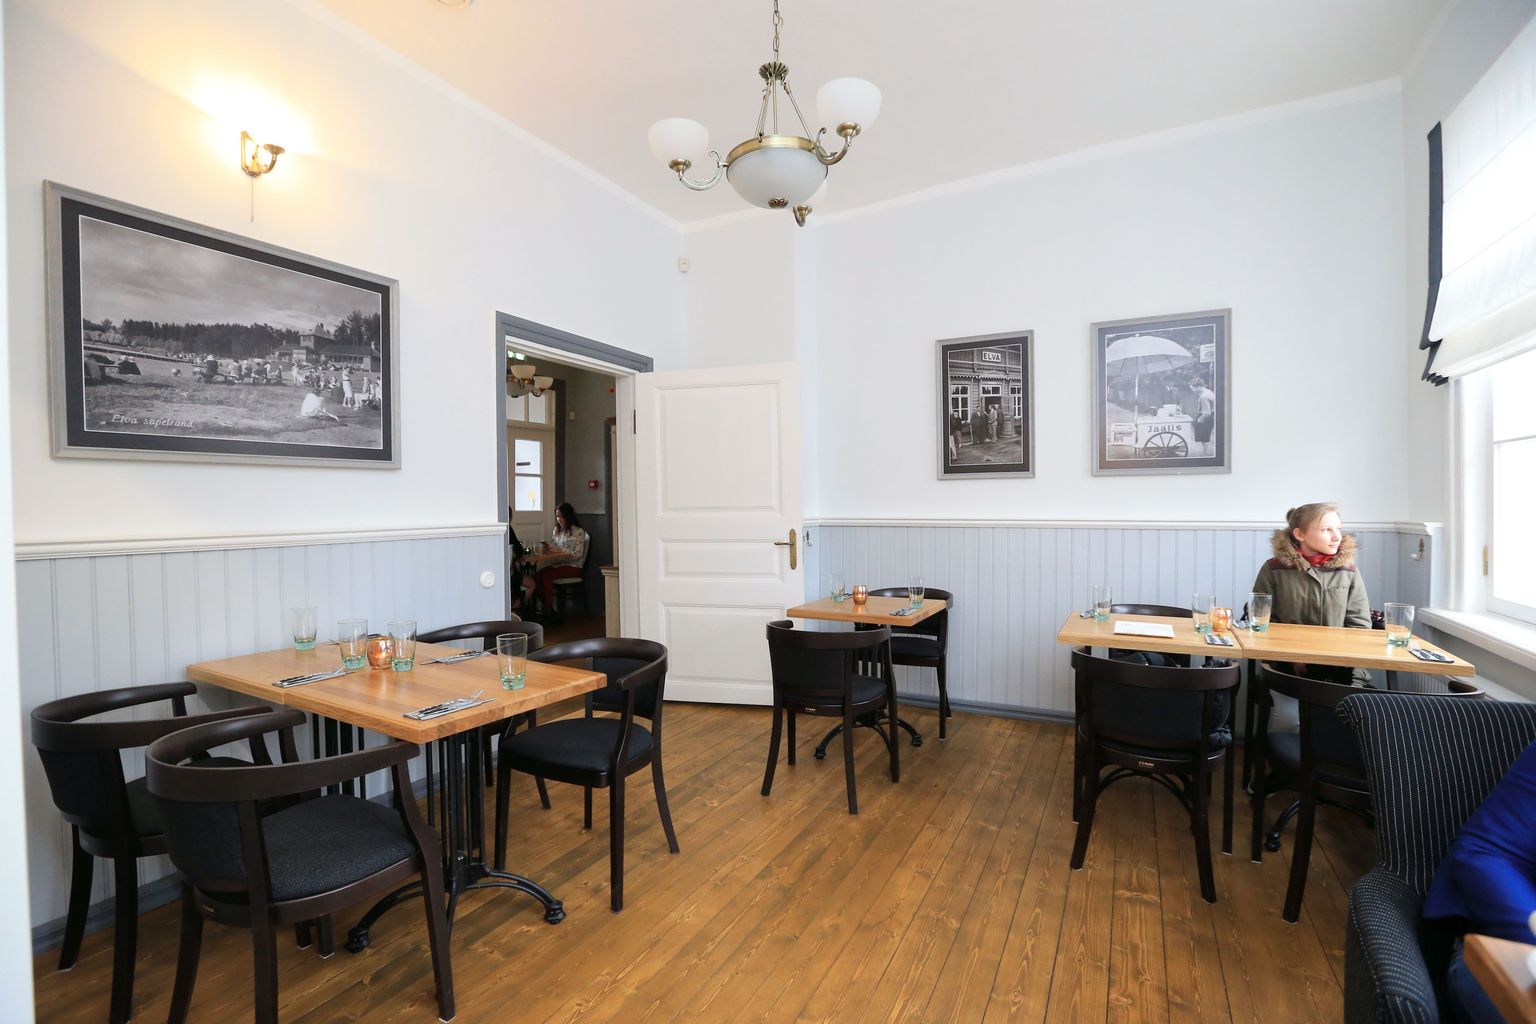 Elva Waksali restorani atmosfäär on inspireeritud kunagise kuurortlinna ajaloost ja linnaga seotud inimestest.